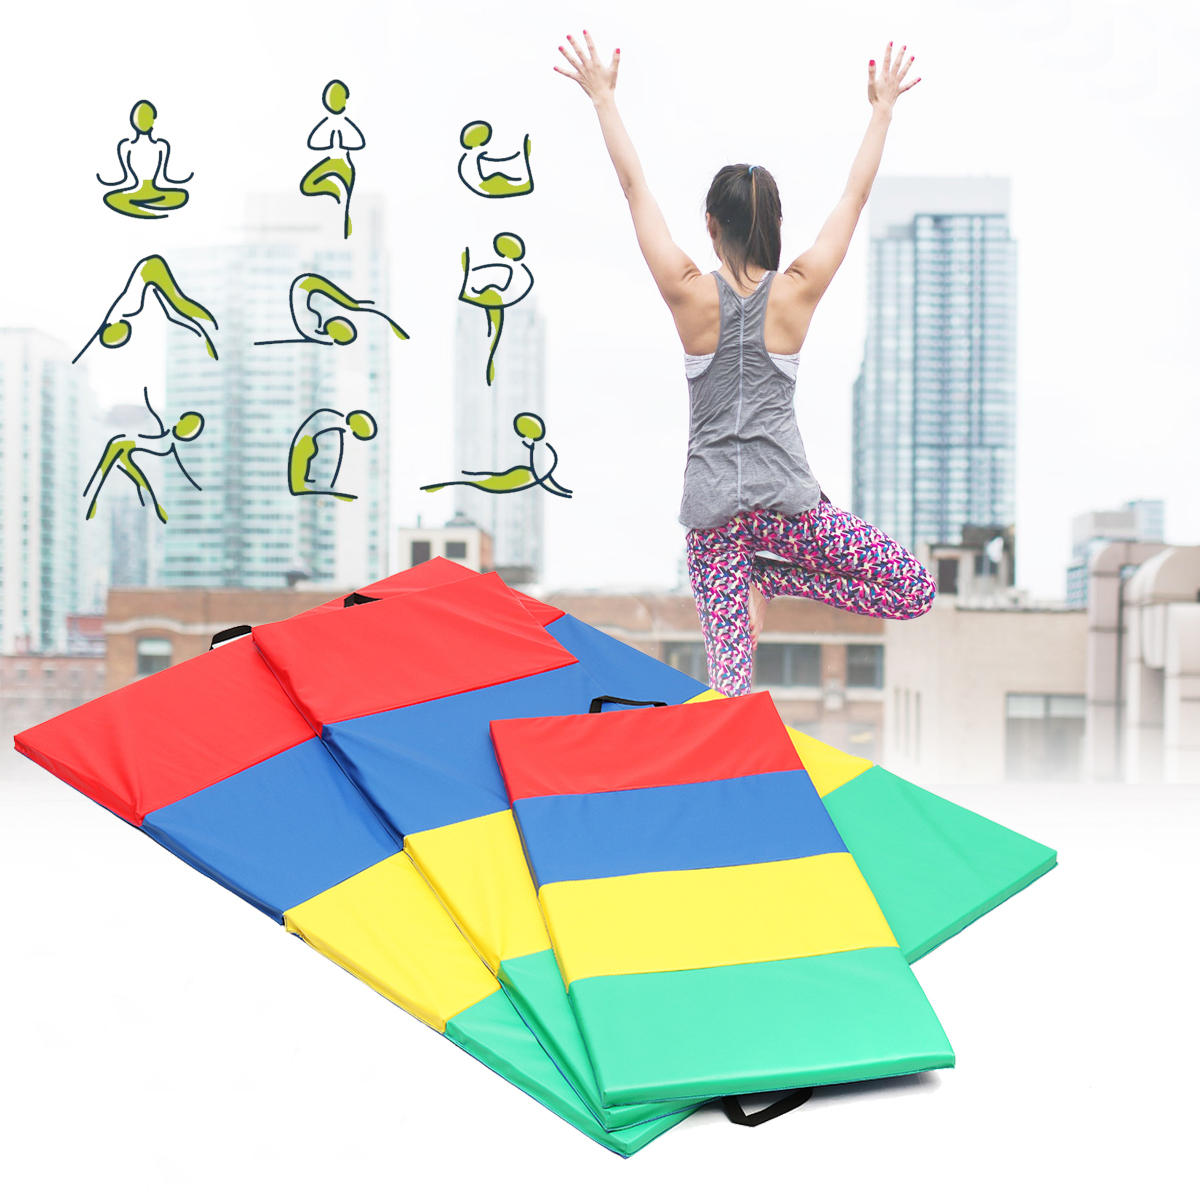 4 faltbare Gymnastikmatten für Yoga, Übungen im Fitnessstudio, Luftbahnpaneele für Tumbling, Klettern und Pilates